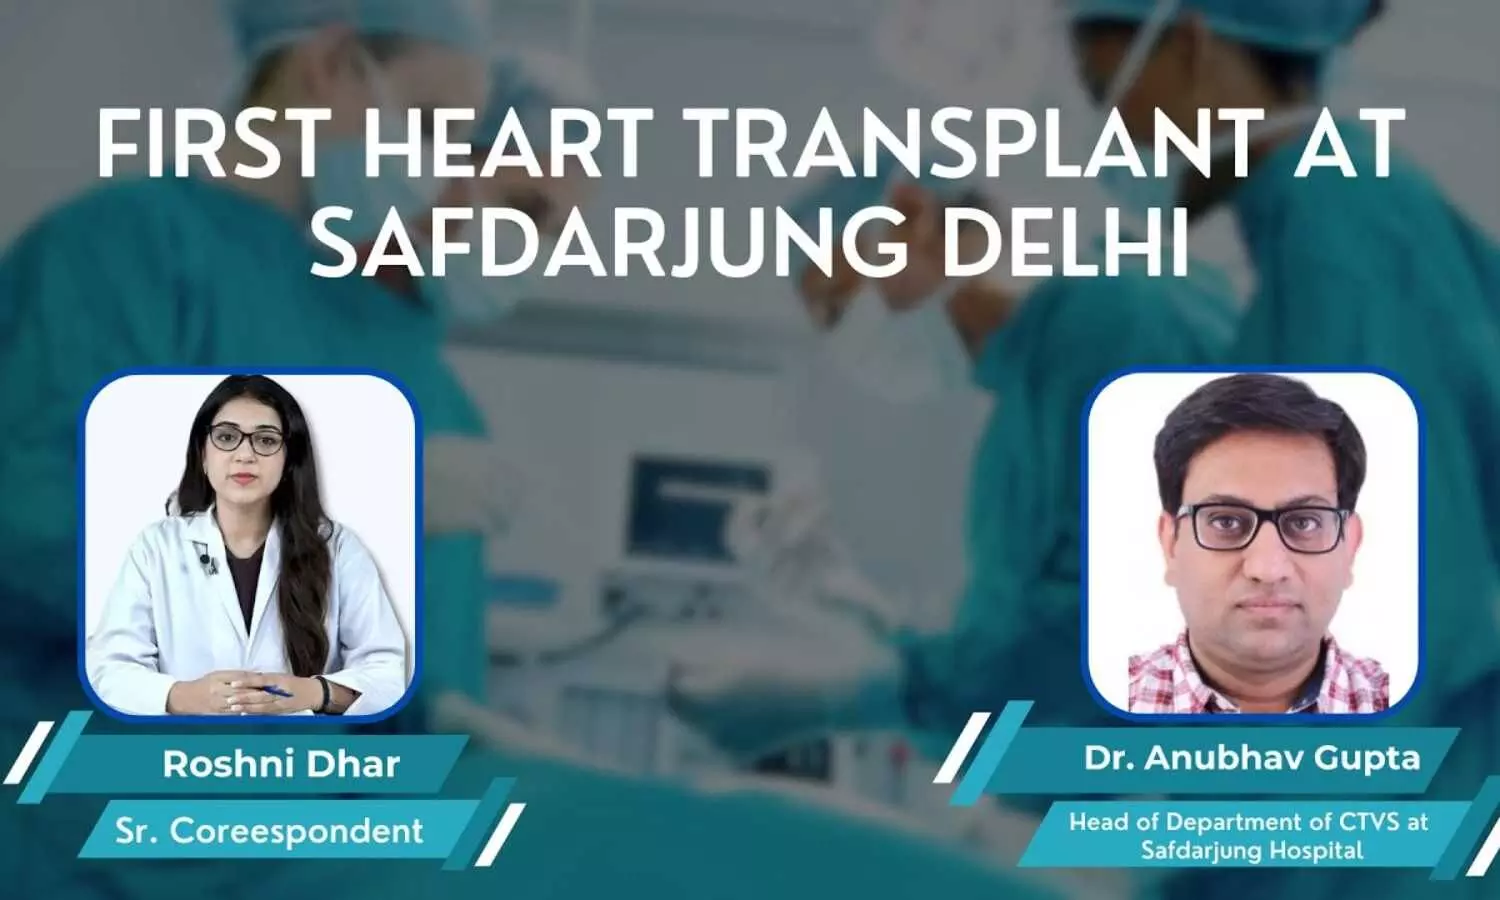 First heart transplant at Safdarjung Hospital, Delhi